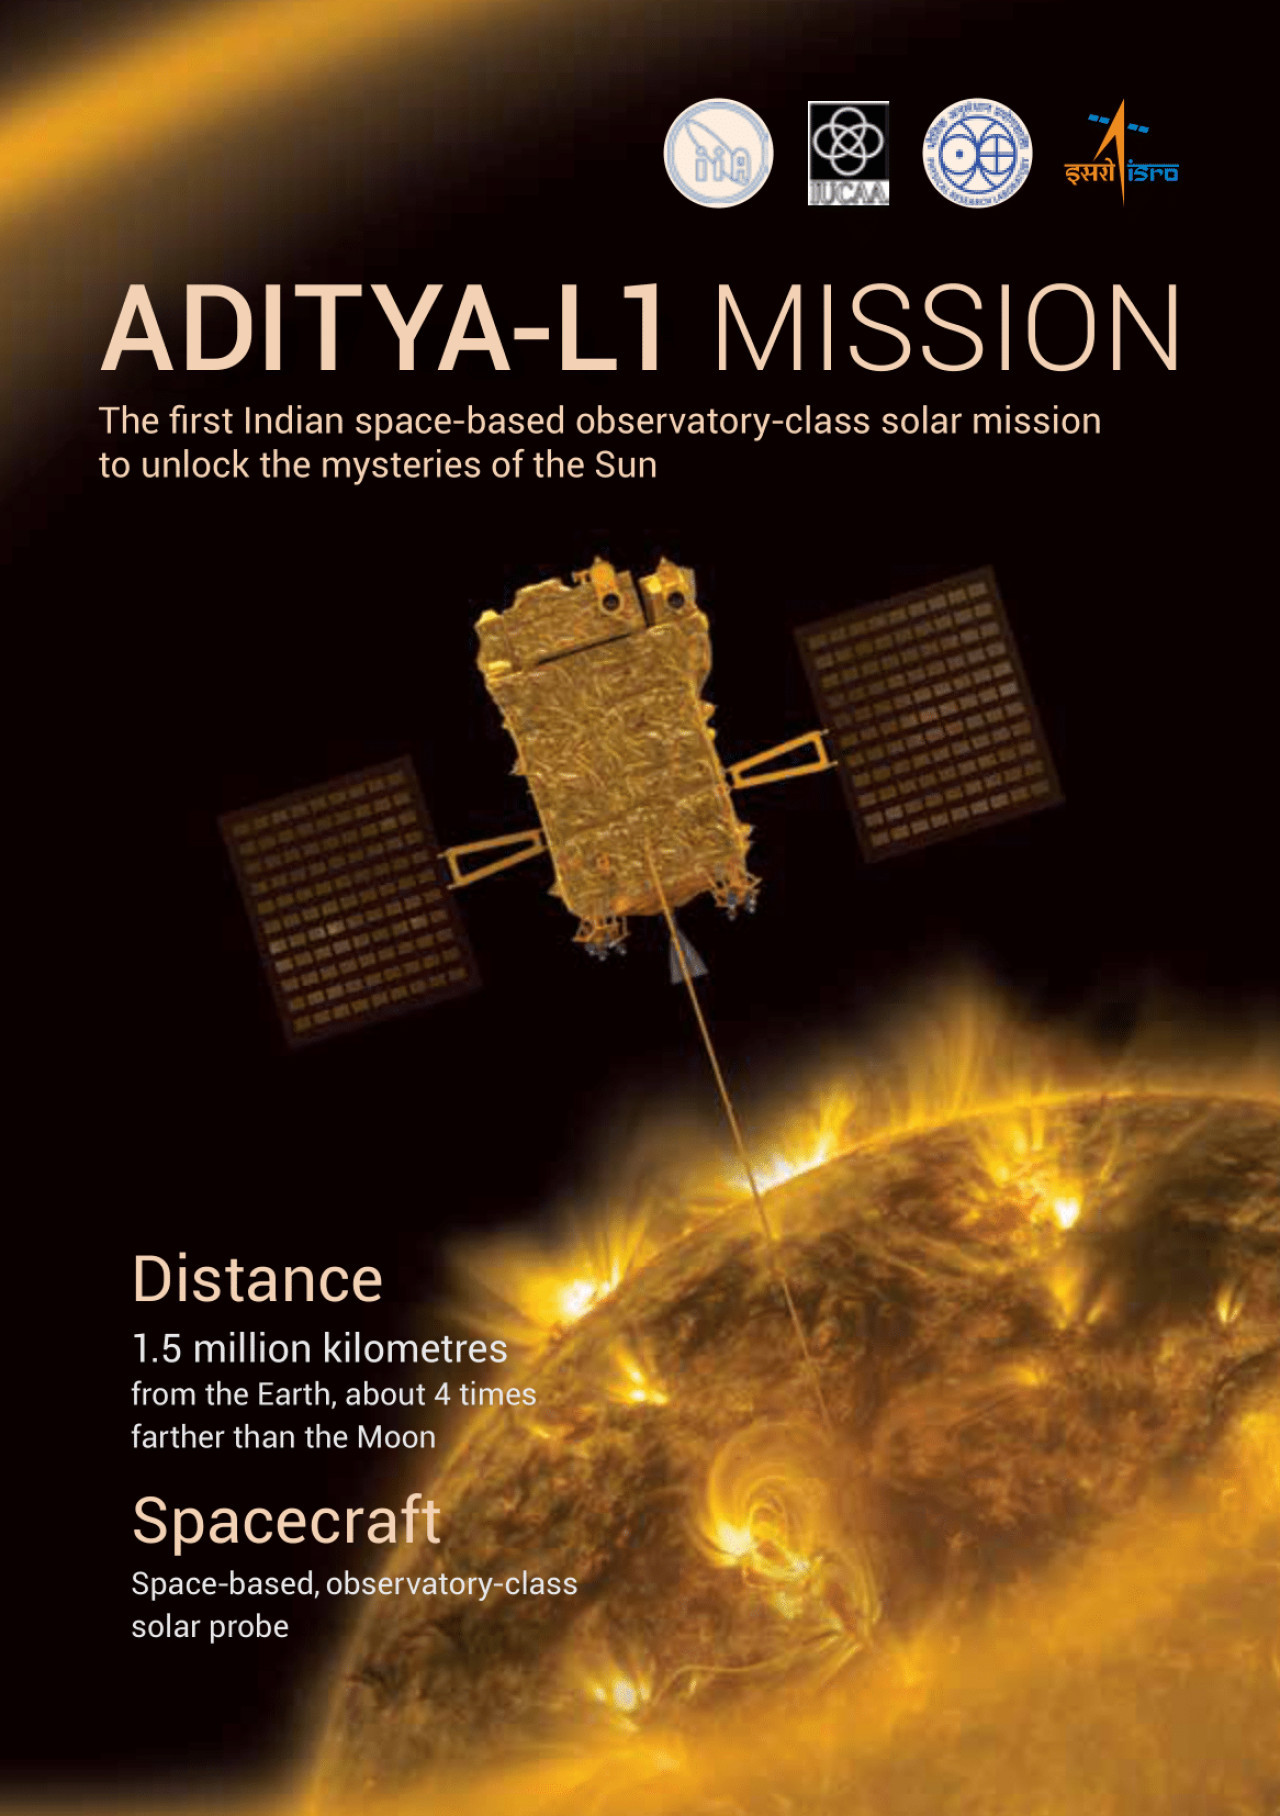 La India lanzará esta semana su primera misión espacial para estudiar el Sol. Foto Twitter.